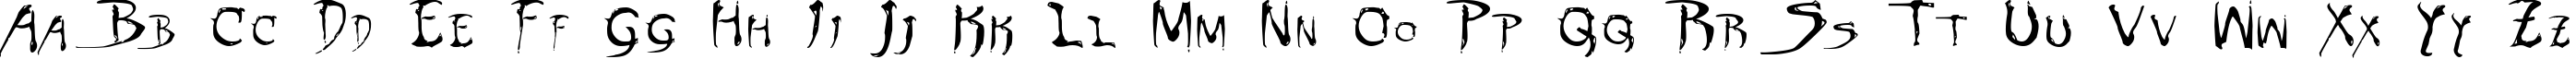 Пример написания английского алфавита шрифтом Dinobots Normal